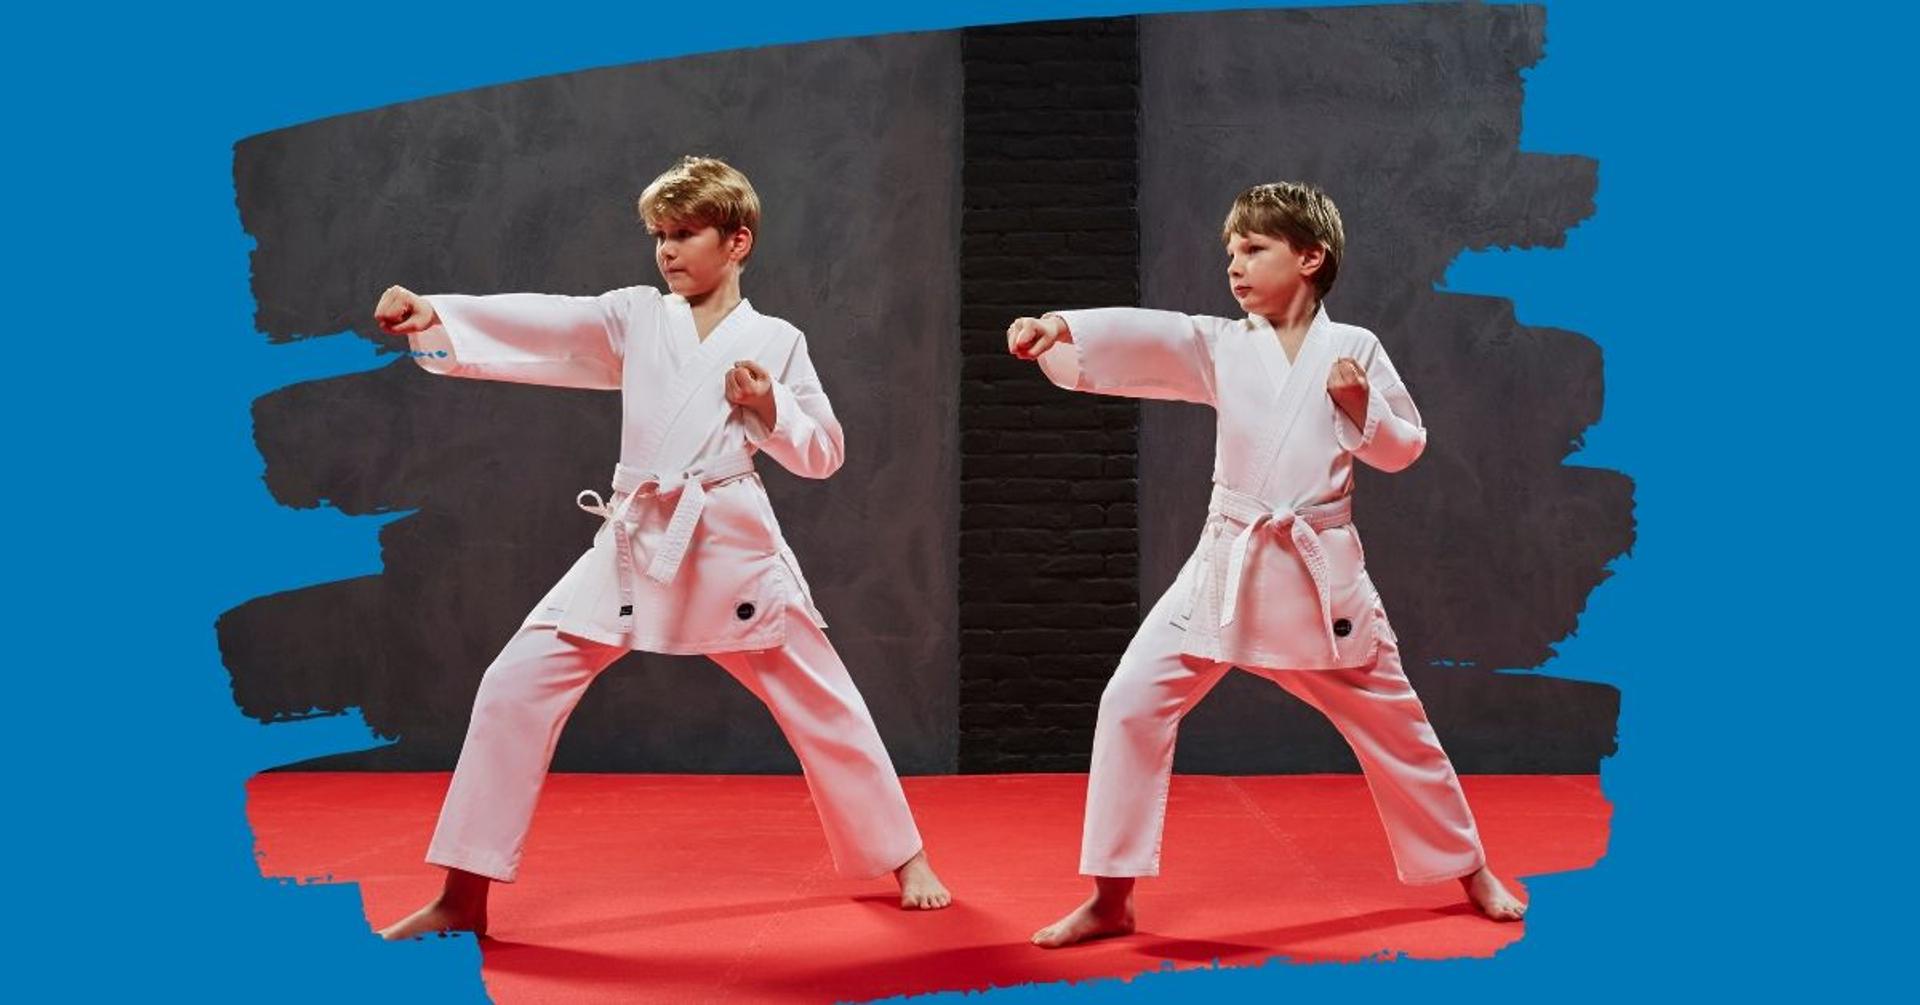 2019-08-karate-1200x628.jpg